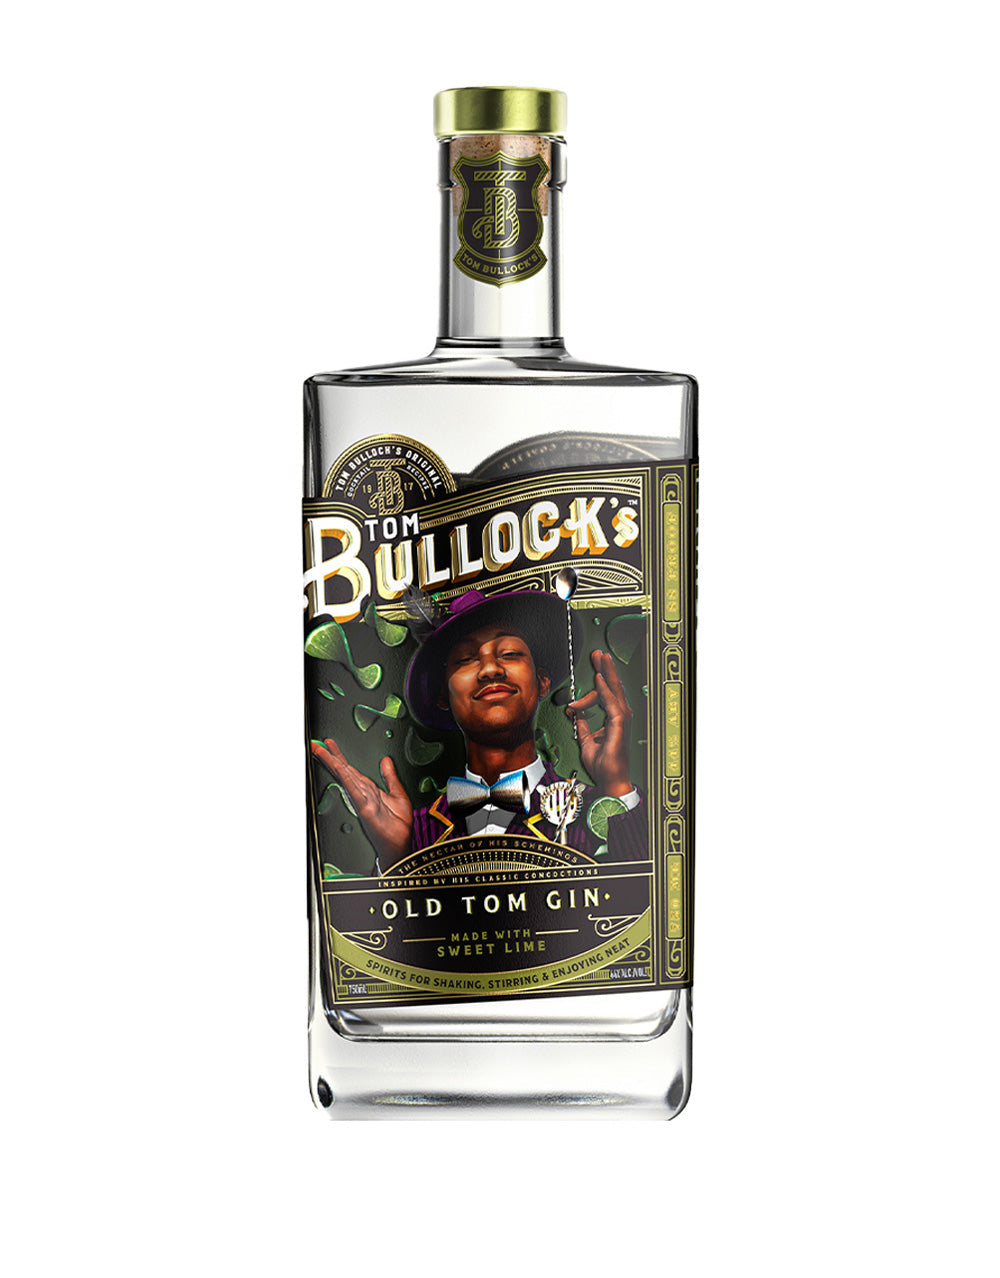 Tom Bullocks Old Tom Gin